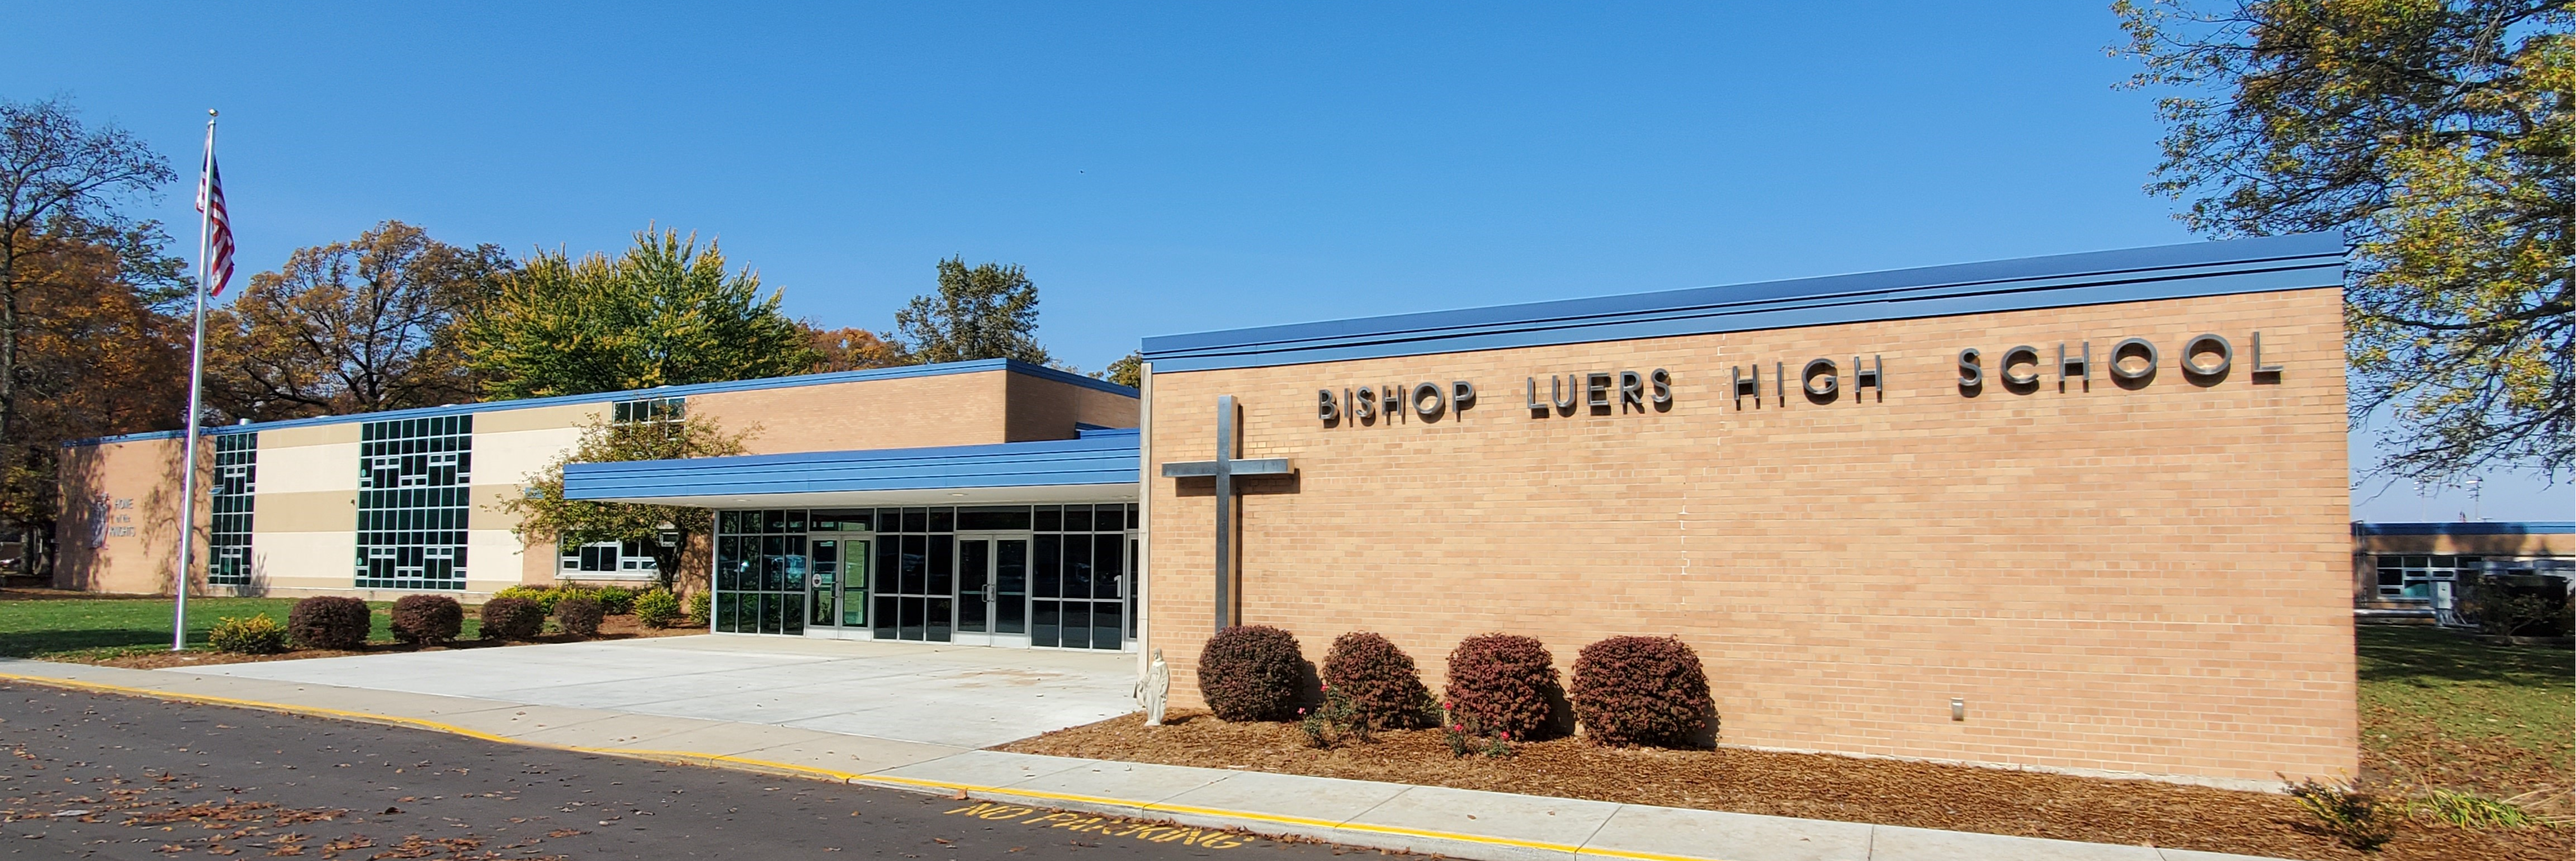 Bishop Luers High School building